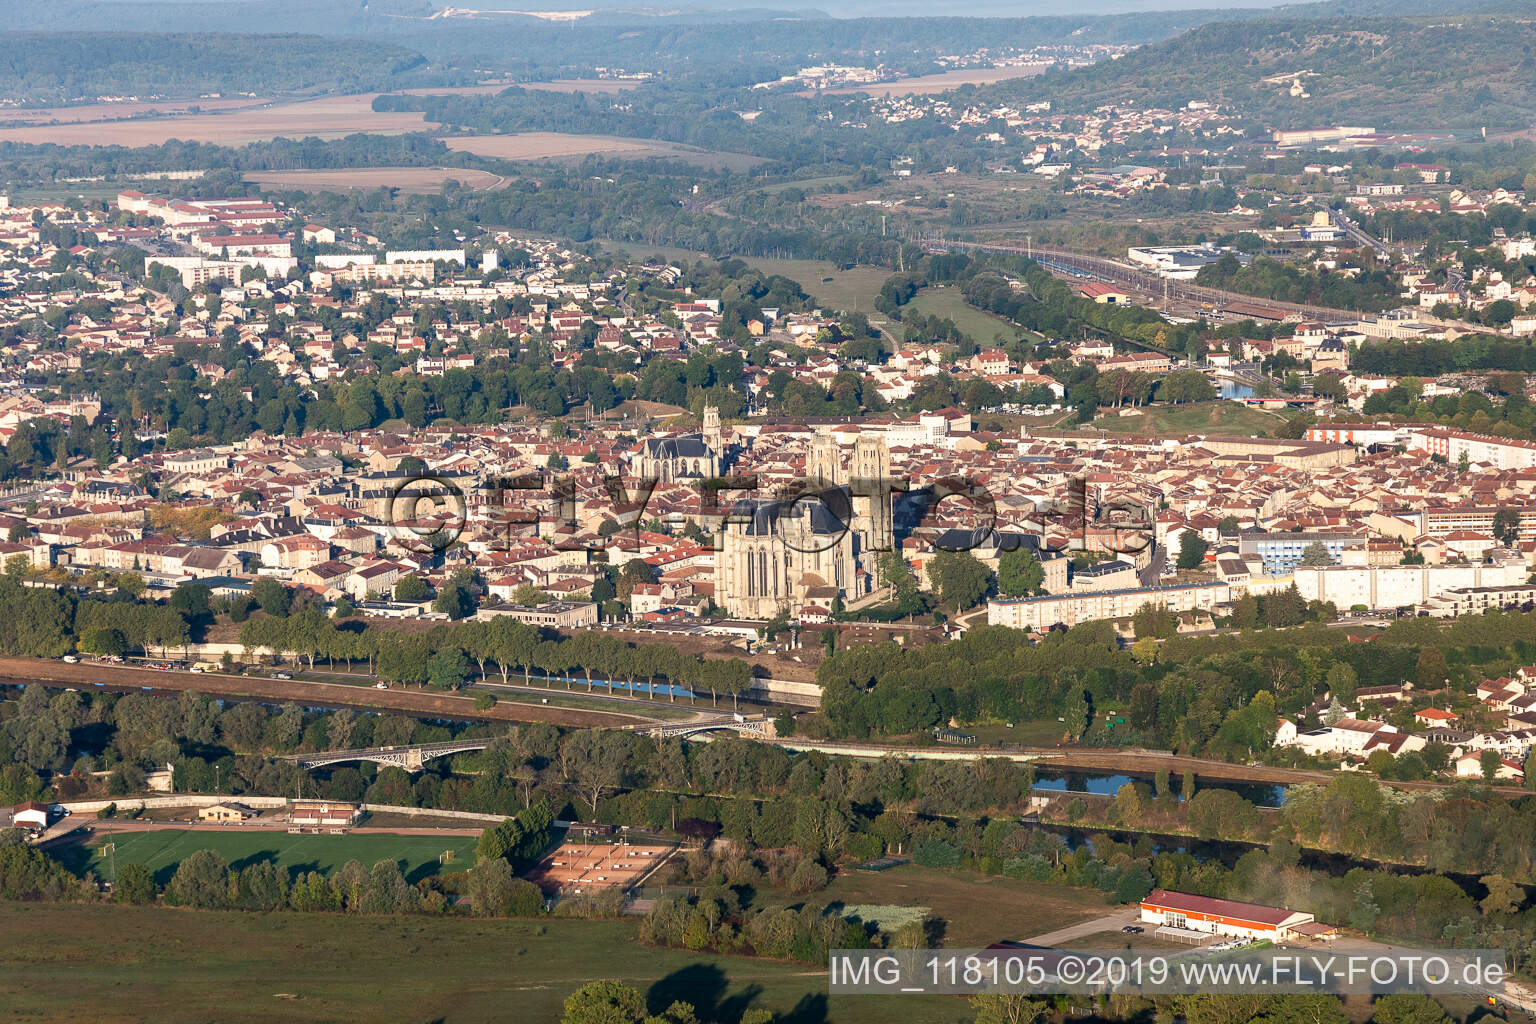 Luftbild von Toul im Bundesland Meurthe-et-Moselle, Frankreich